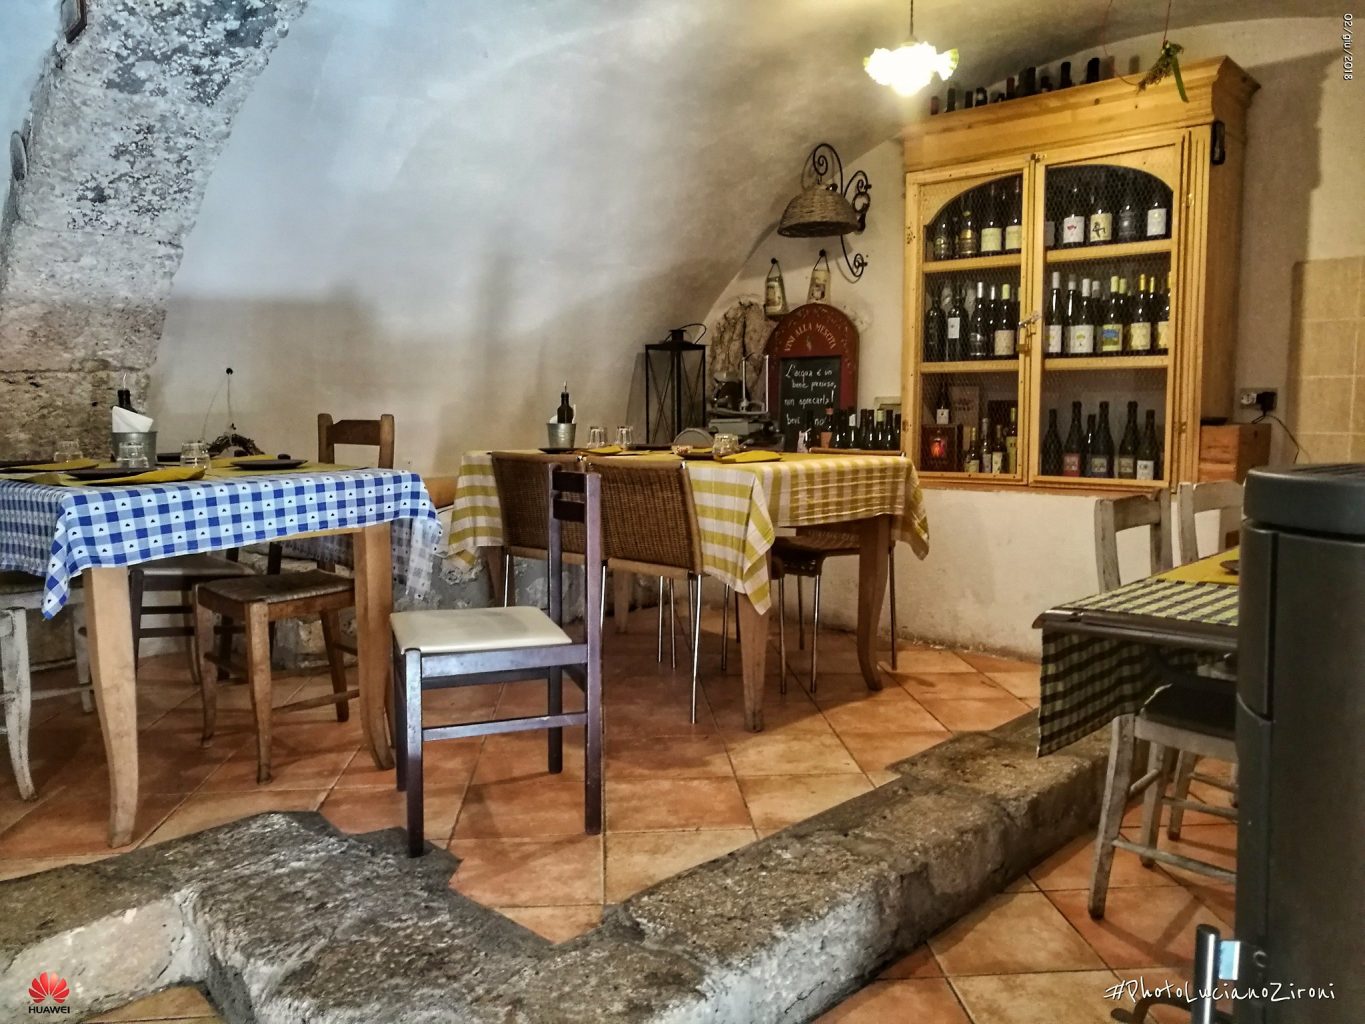 Restaurant in Rocca Calascio